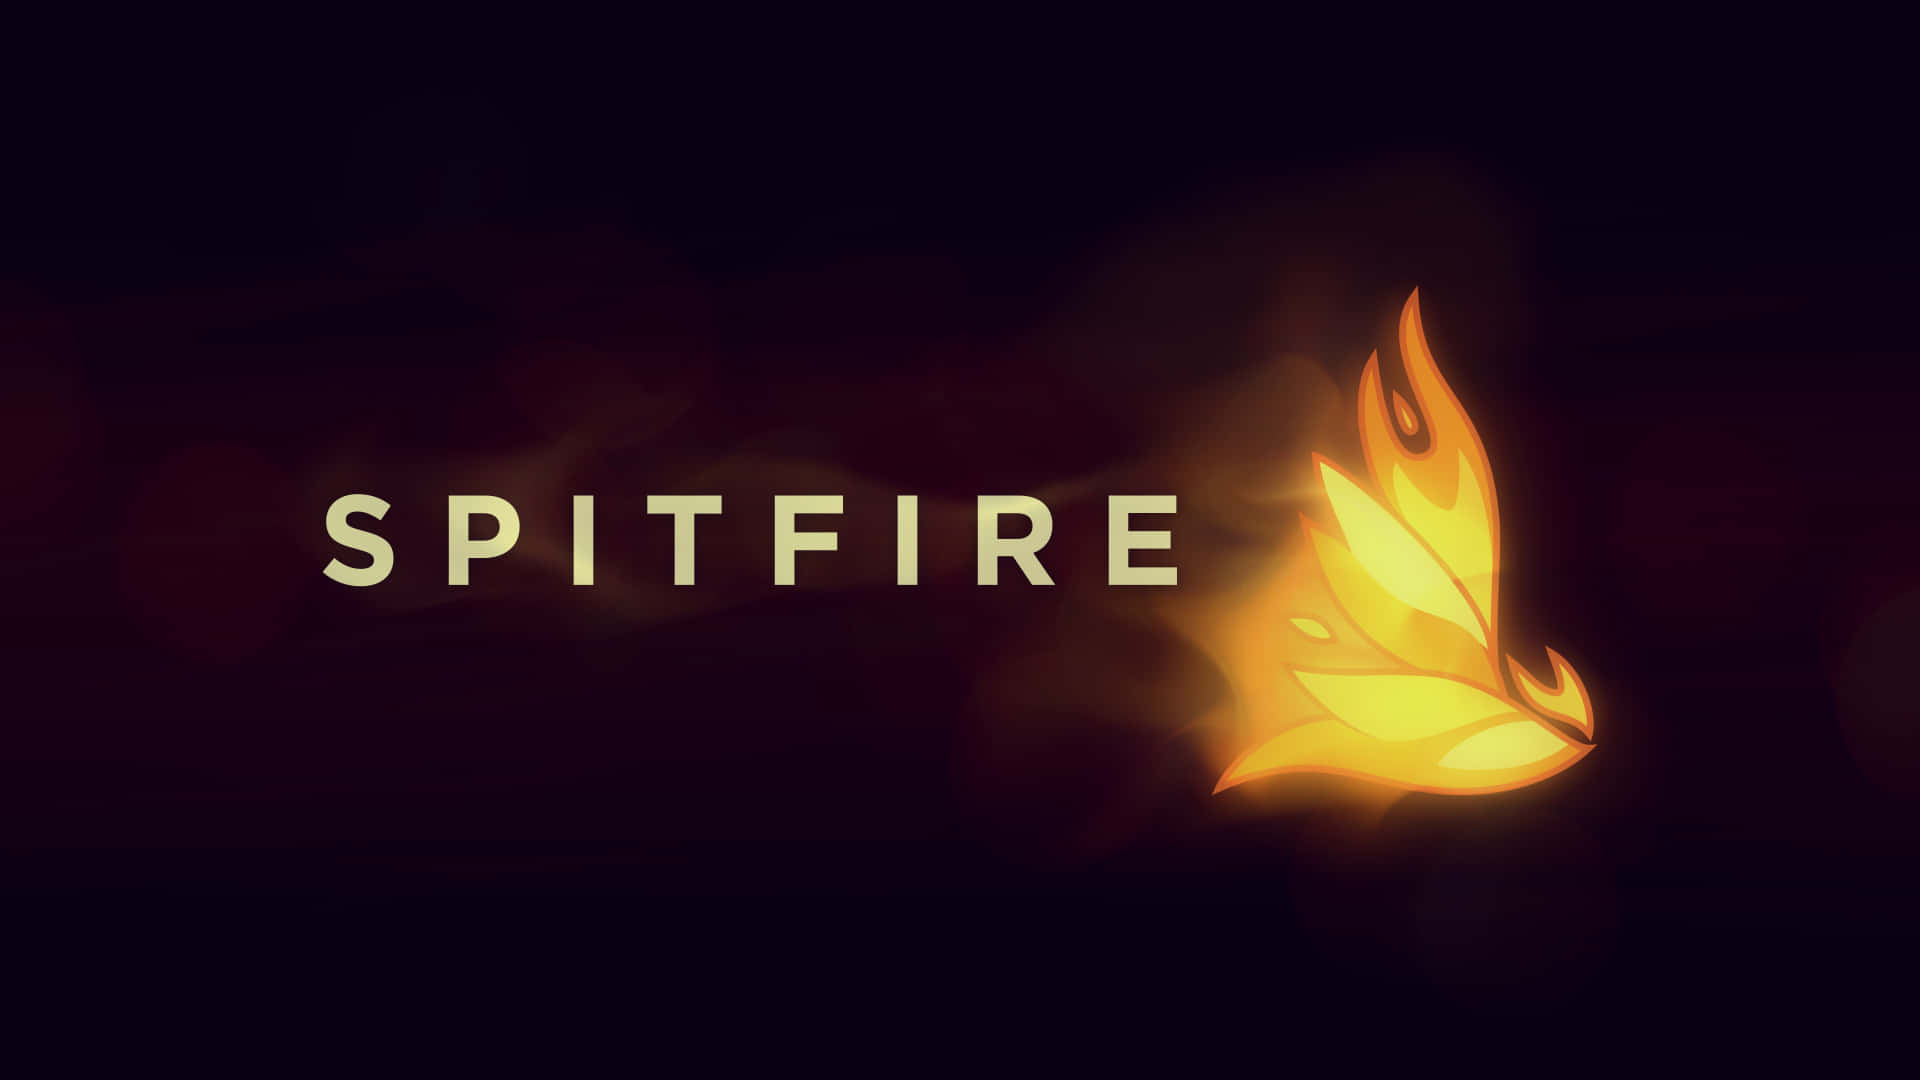 Spitfireun Logotipo De Fuego Sobre Un Fondo Negro Fondo de pantalla